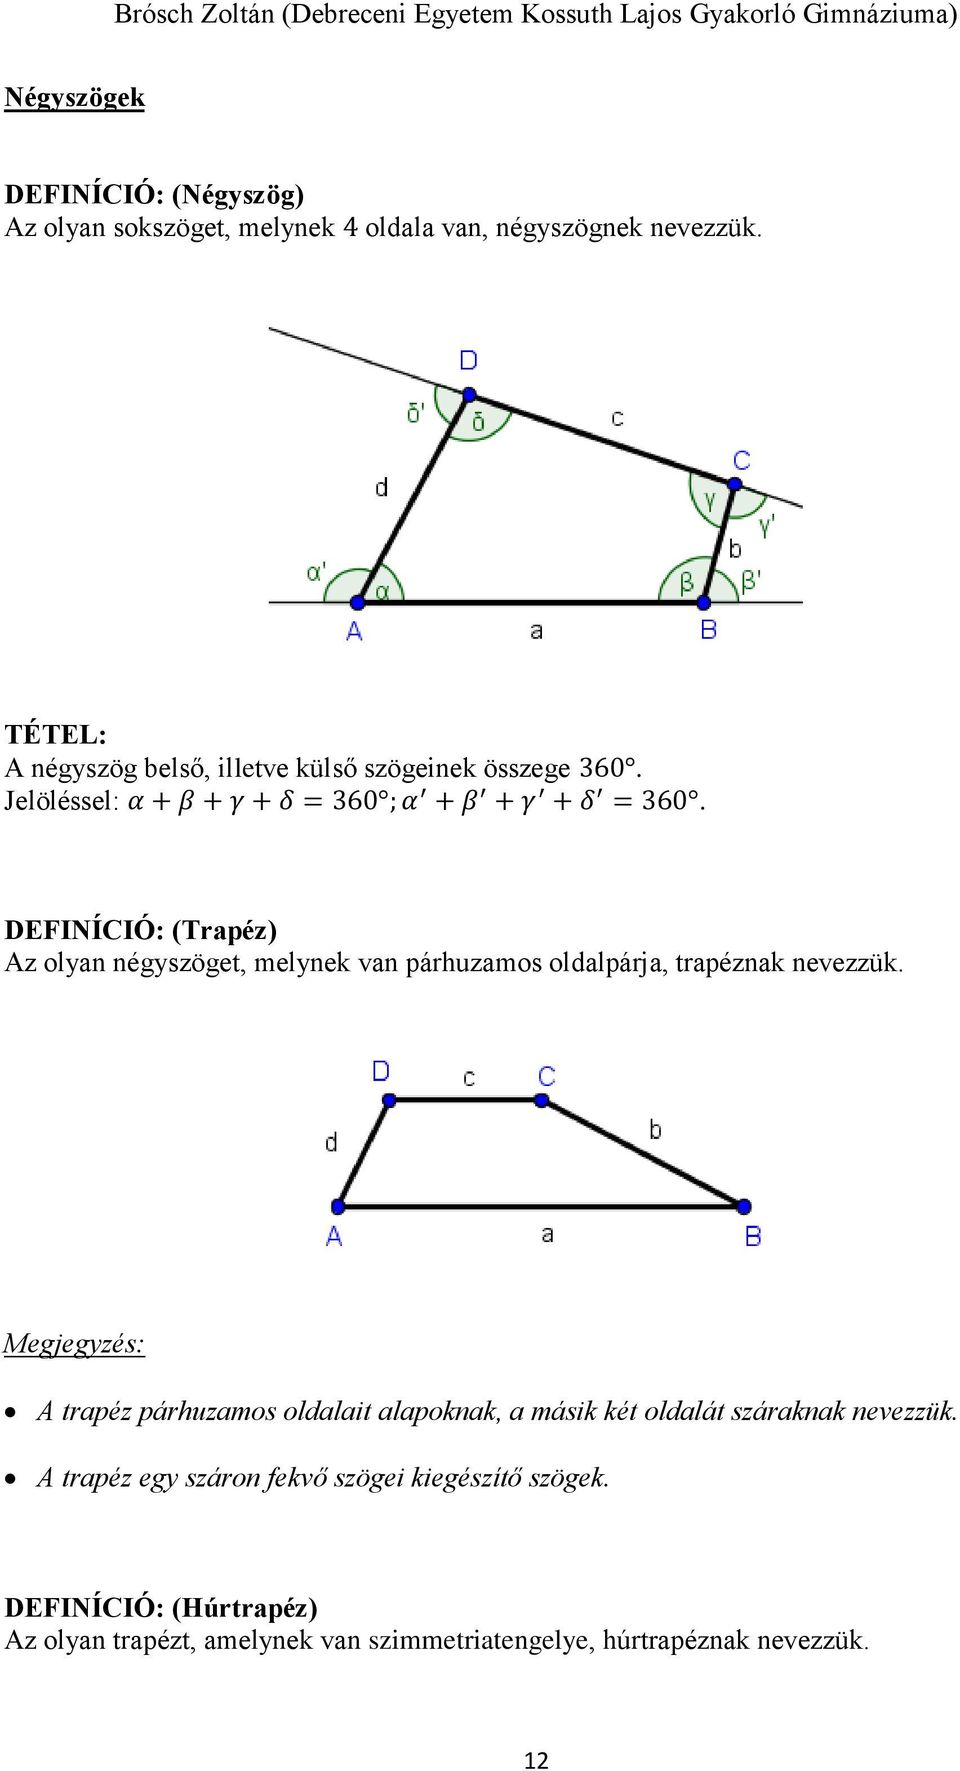 DEFINÍCIÓ: (Trapéz) Az olyan négyszöget, melynek van párhuzamos oldalpárja, trapéznak nevezzük.